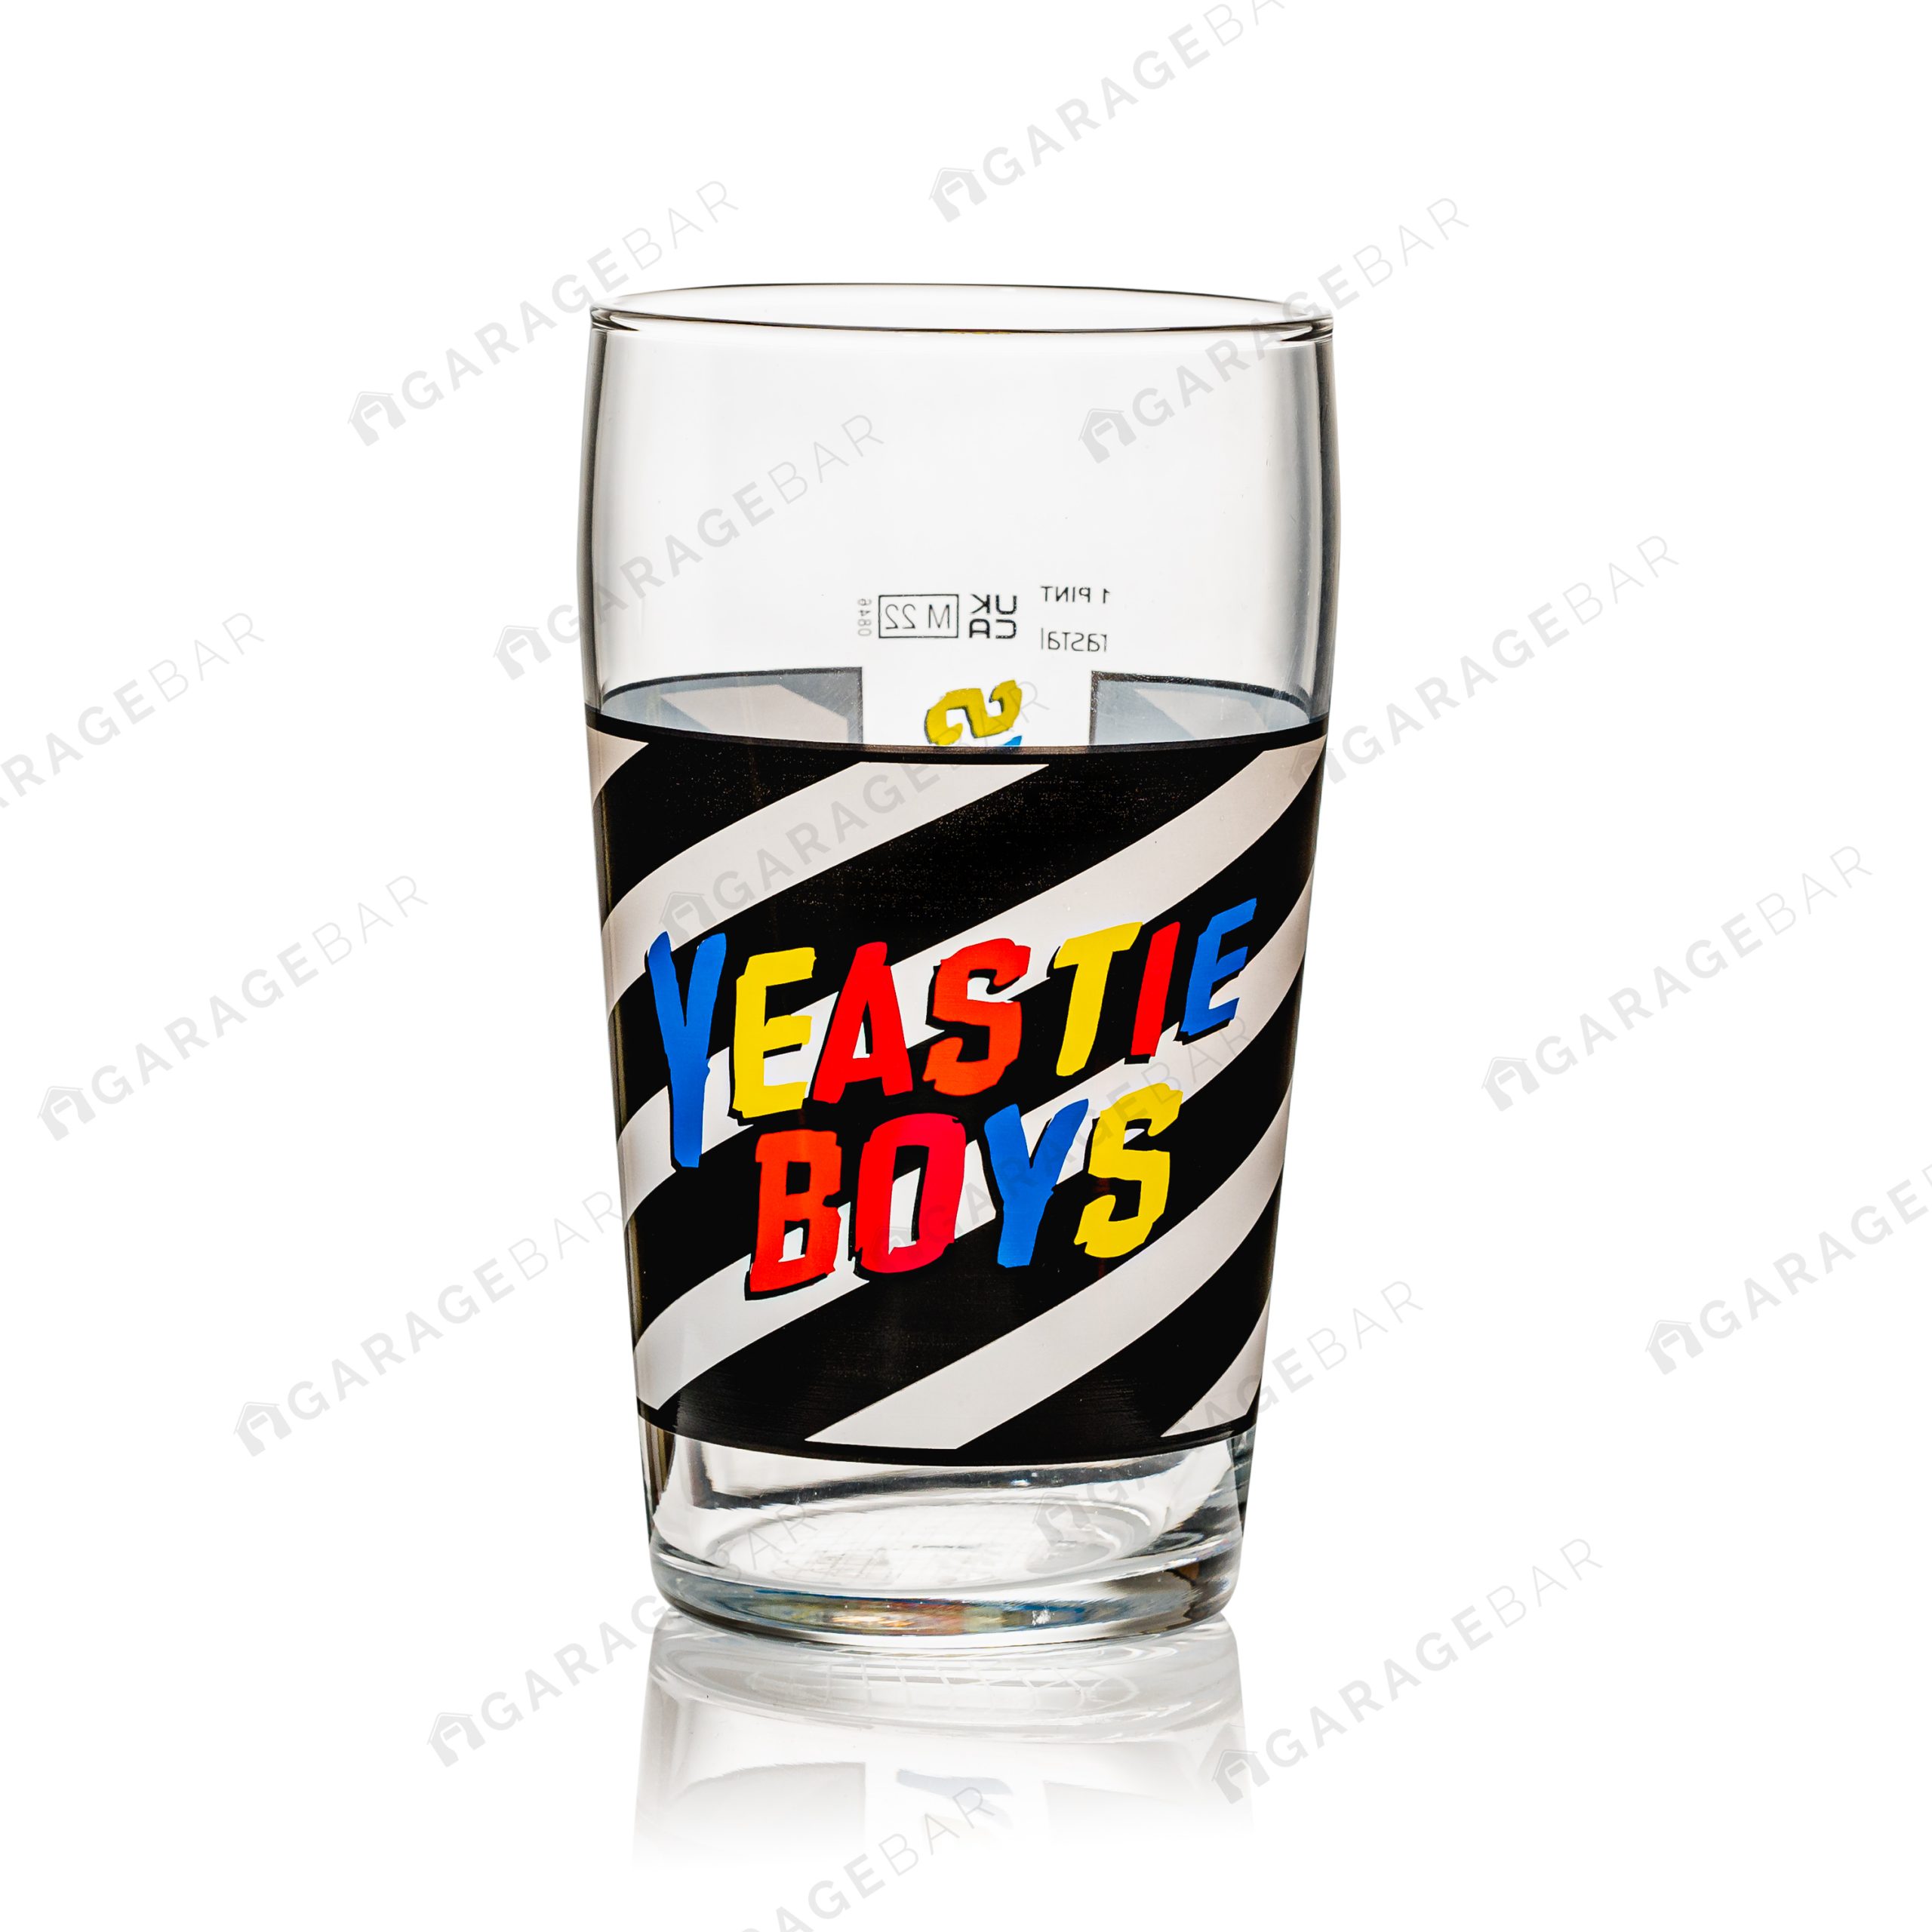 Yeastie Boys Beer Pint Glass